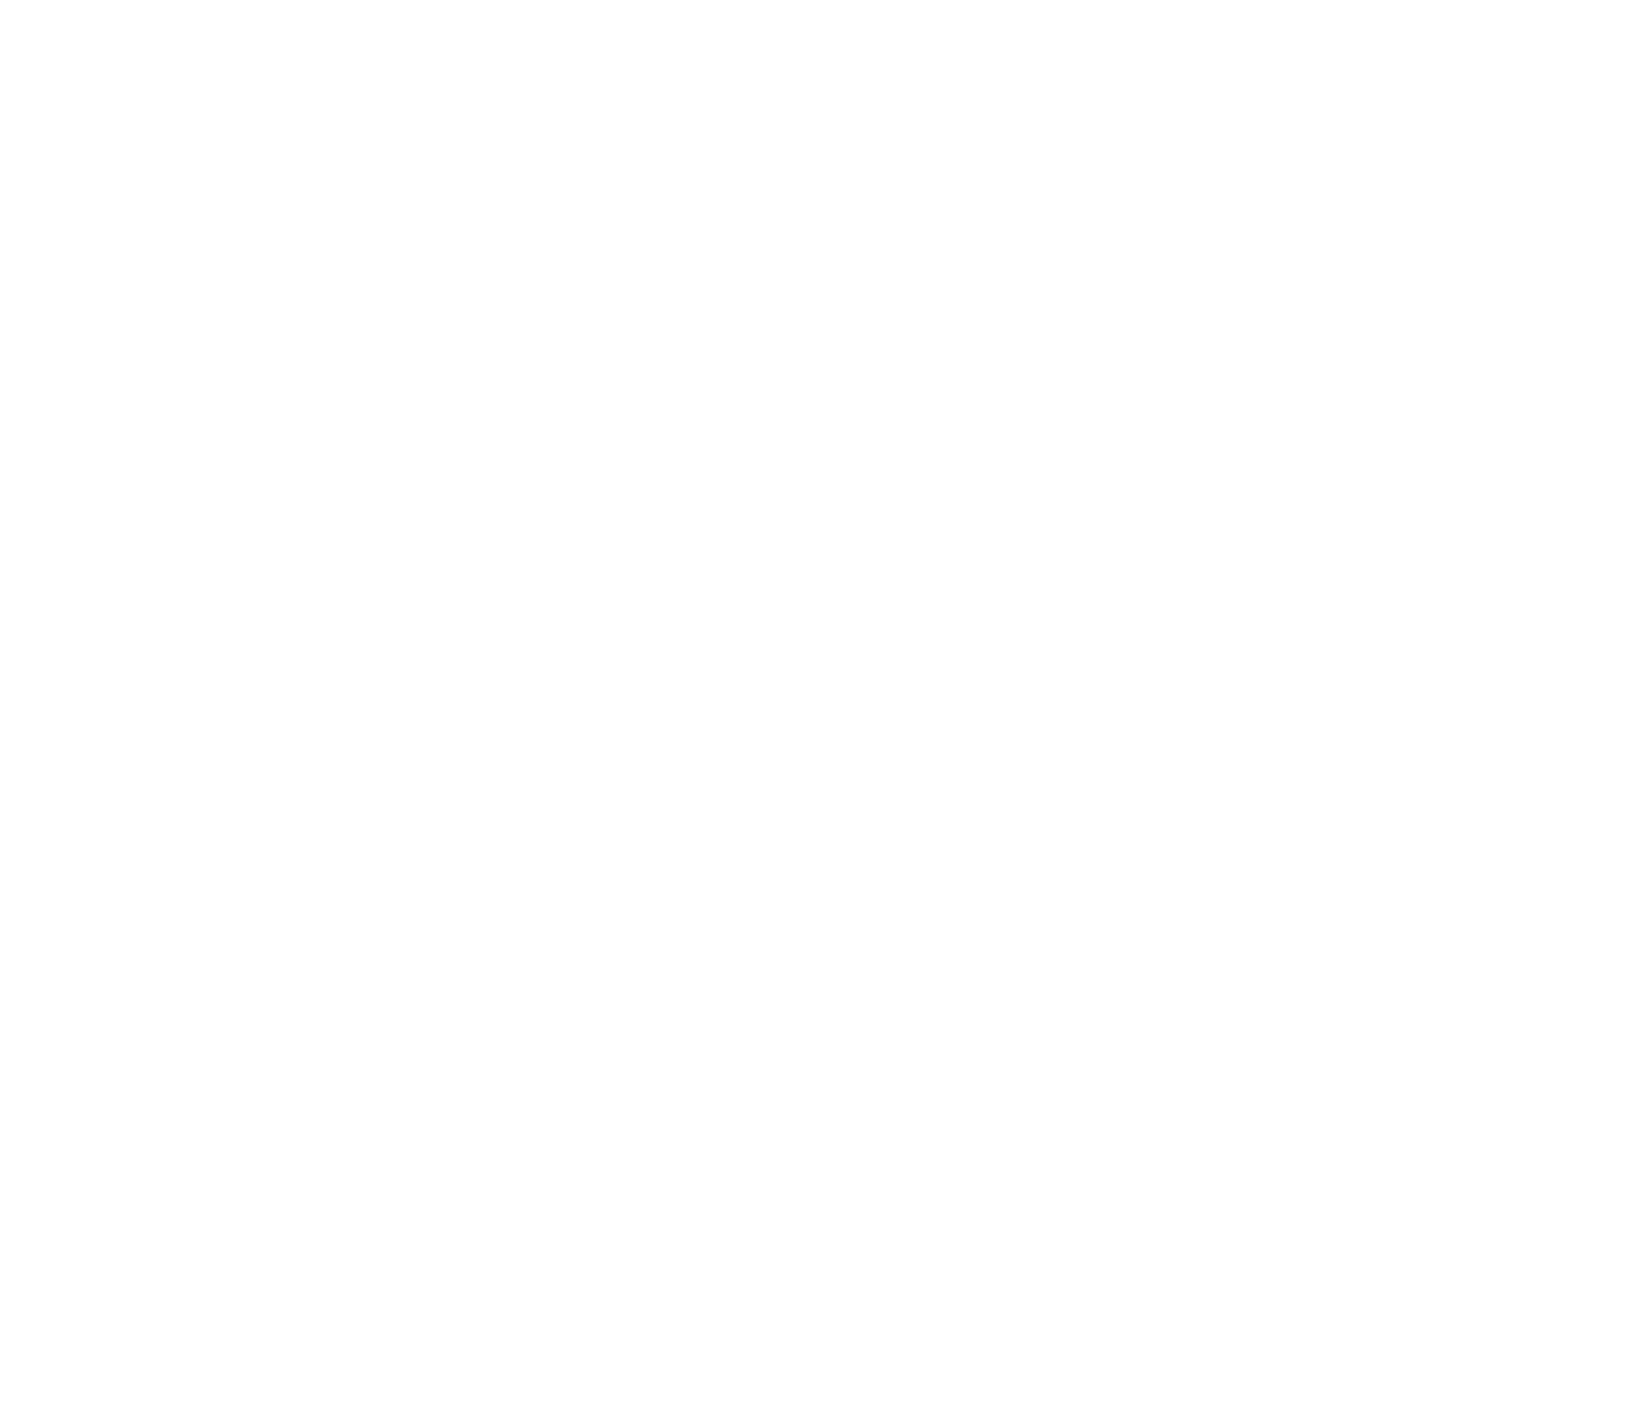 SeaWorld Entertainment logo pour fonds sombres (PNG transparent)